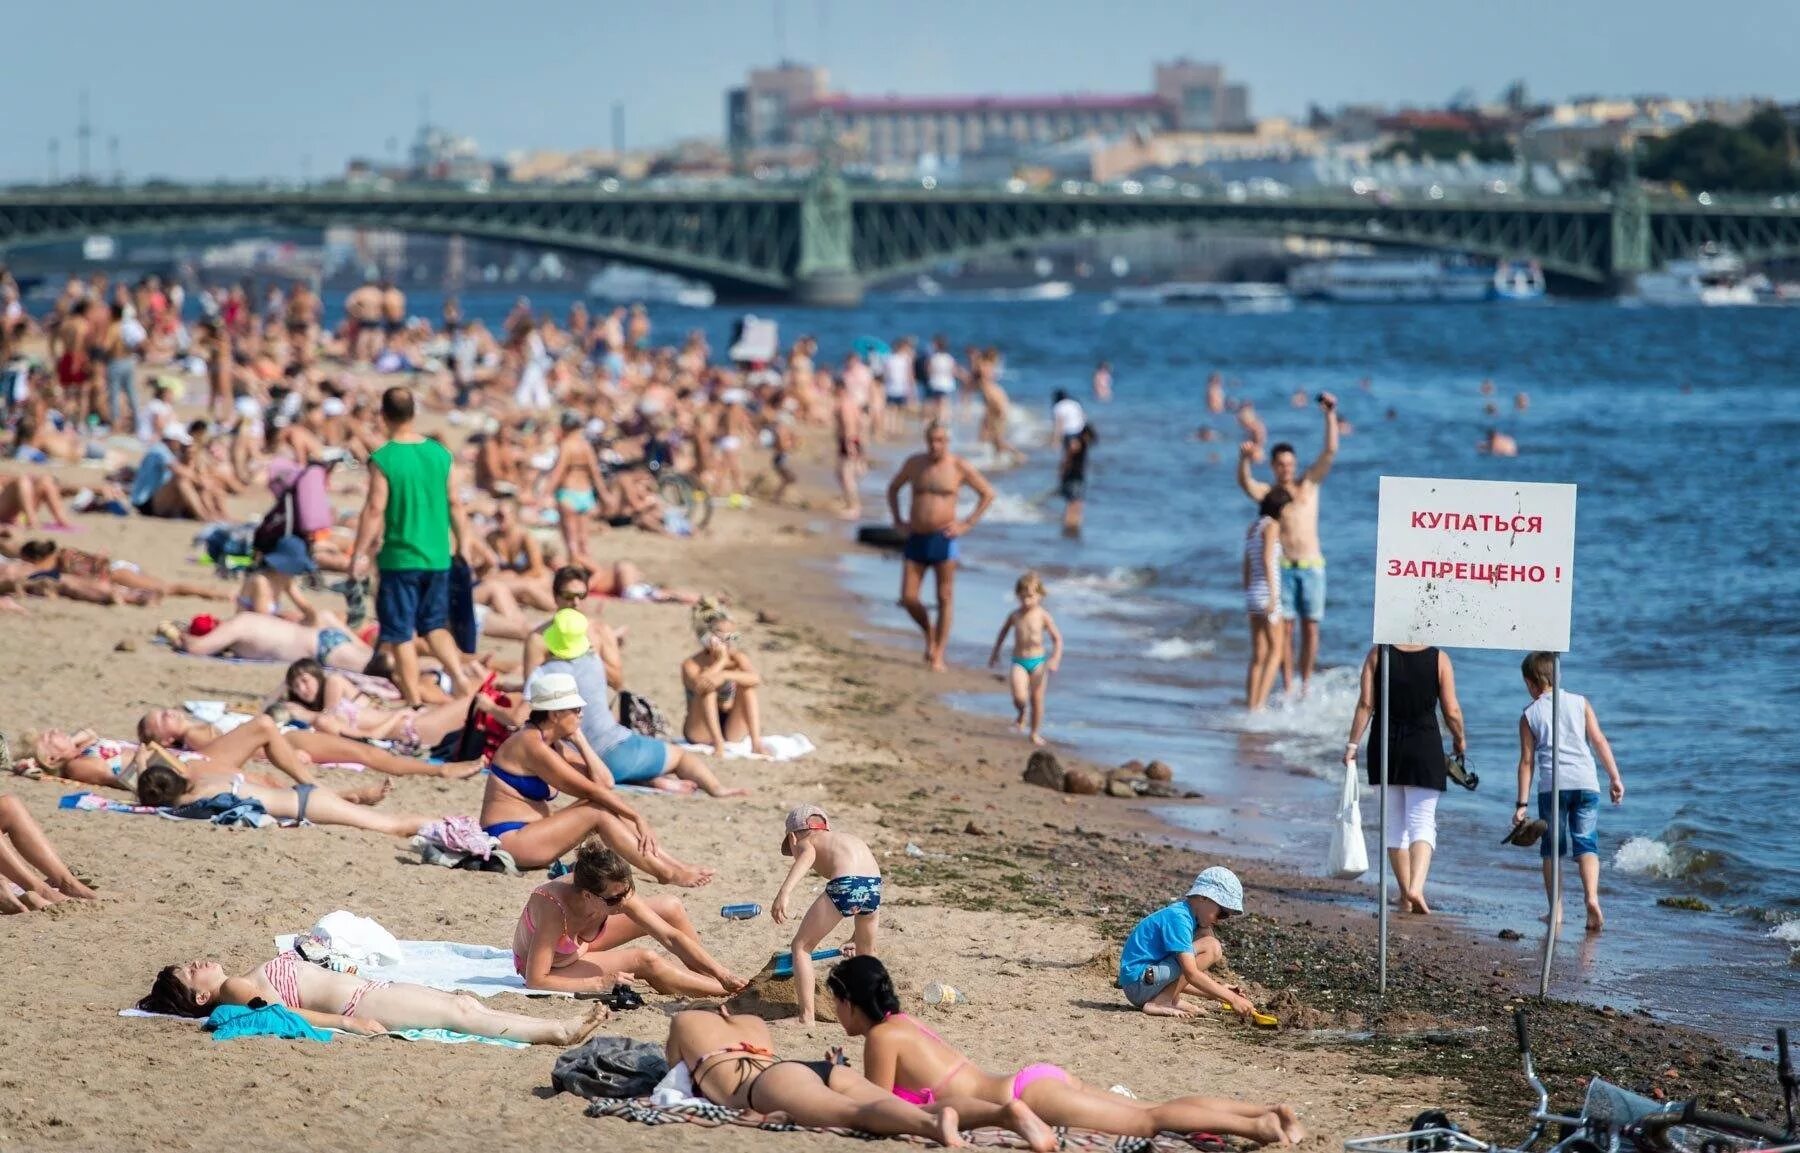 Люди на пляже. Пляж с отдыхающими. Пляж Санкт-Петербург. Переполненные пляжи. Отдыхая летом в петербурге